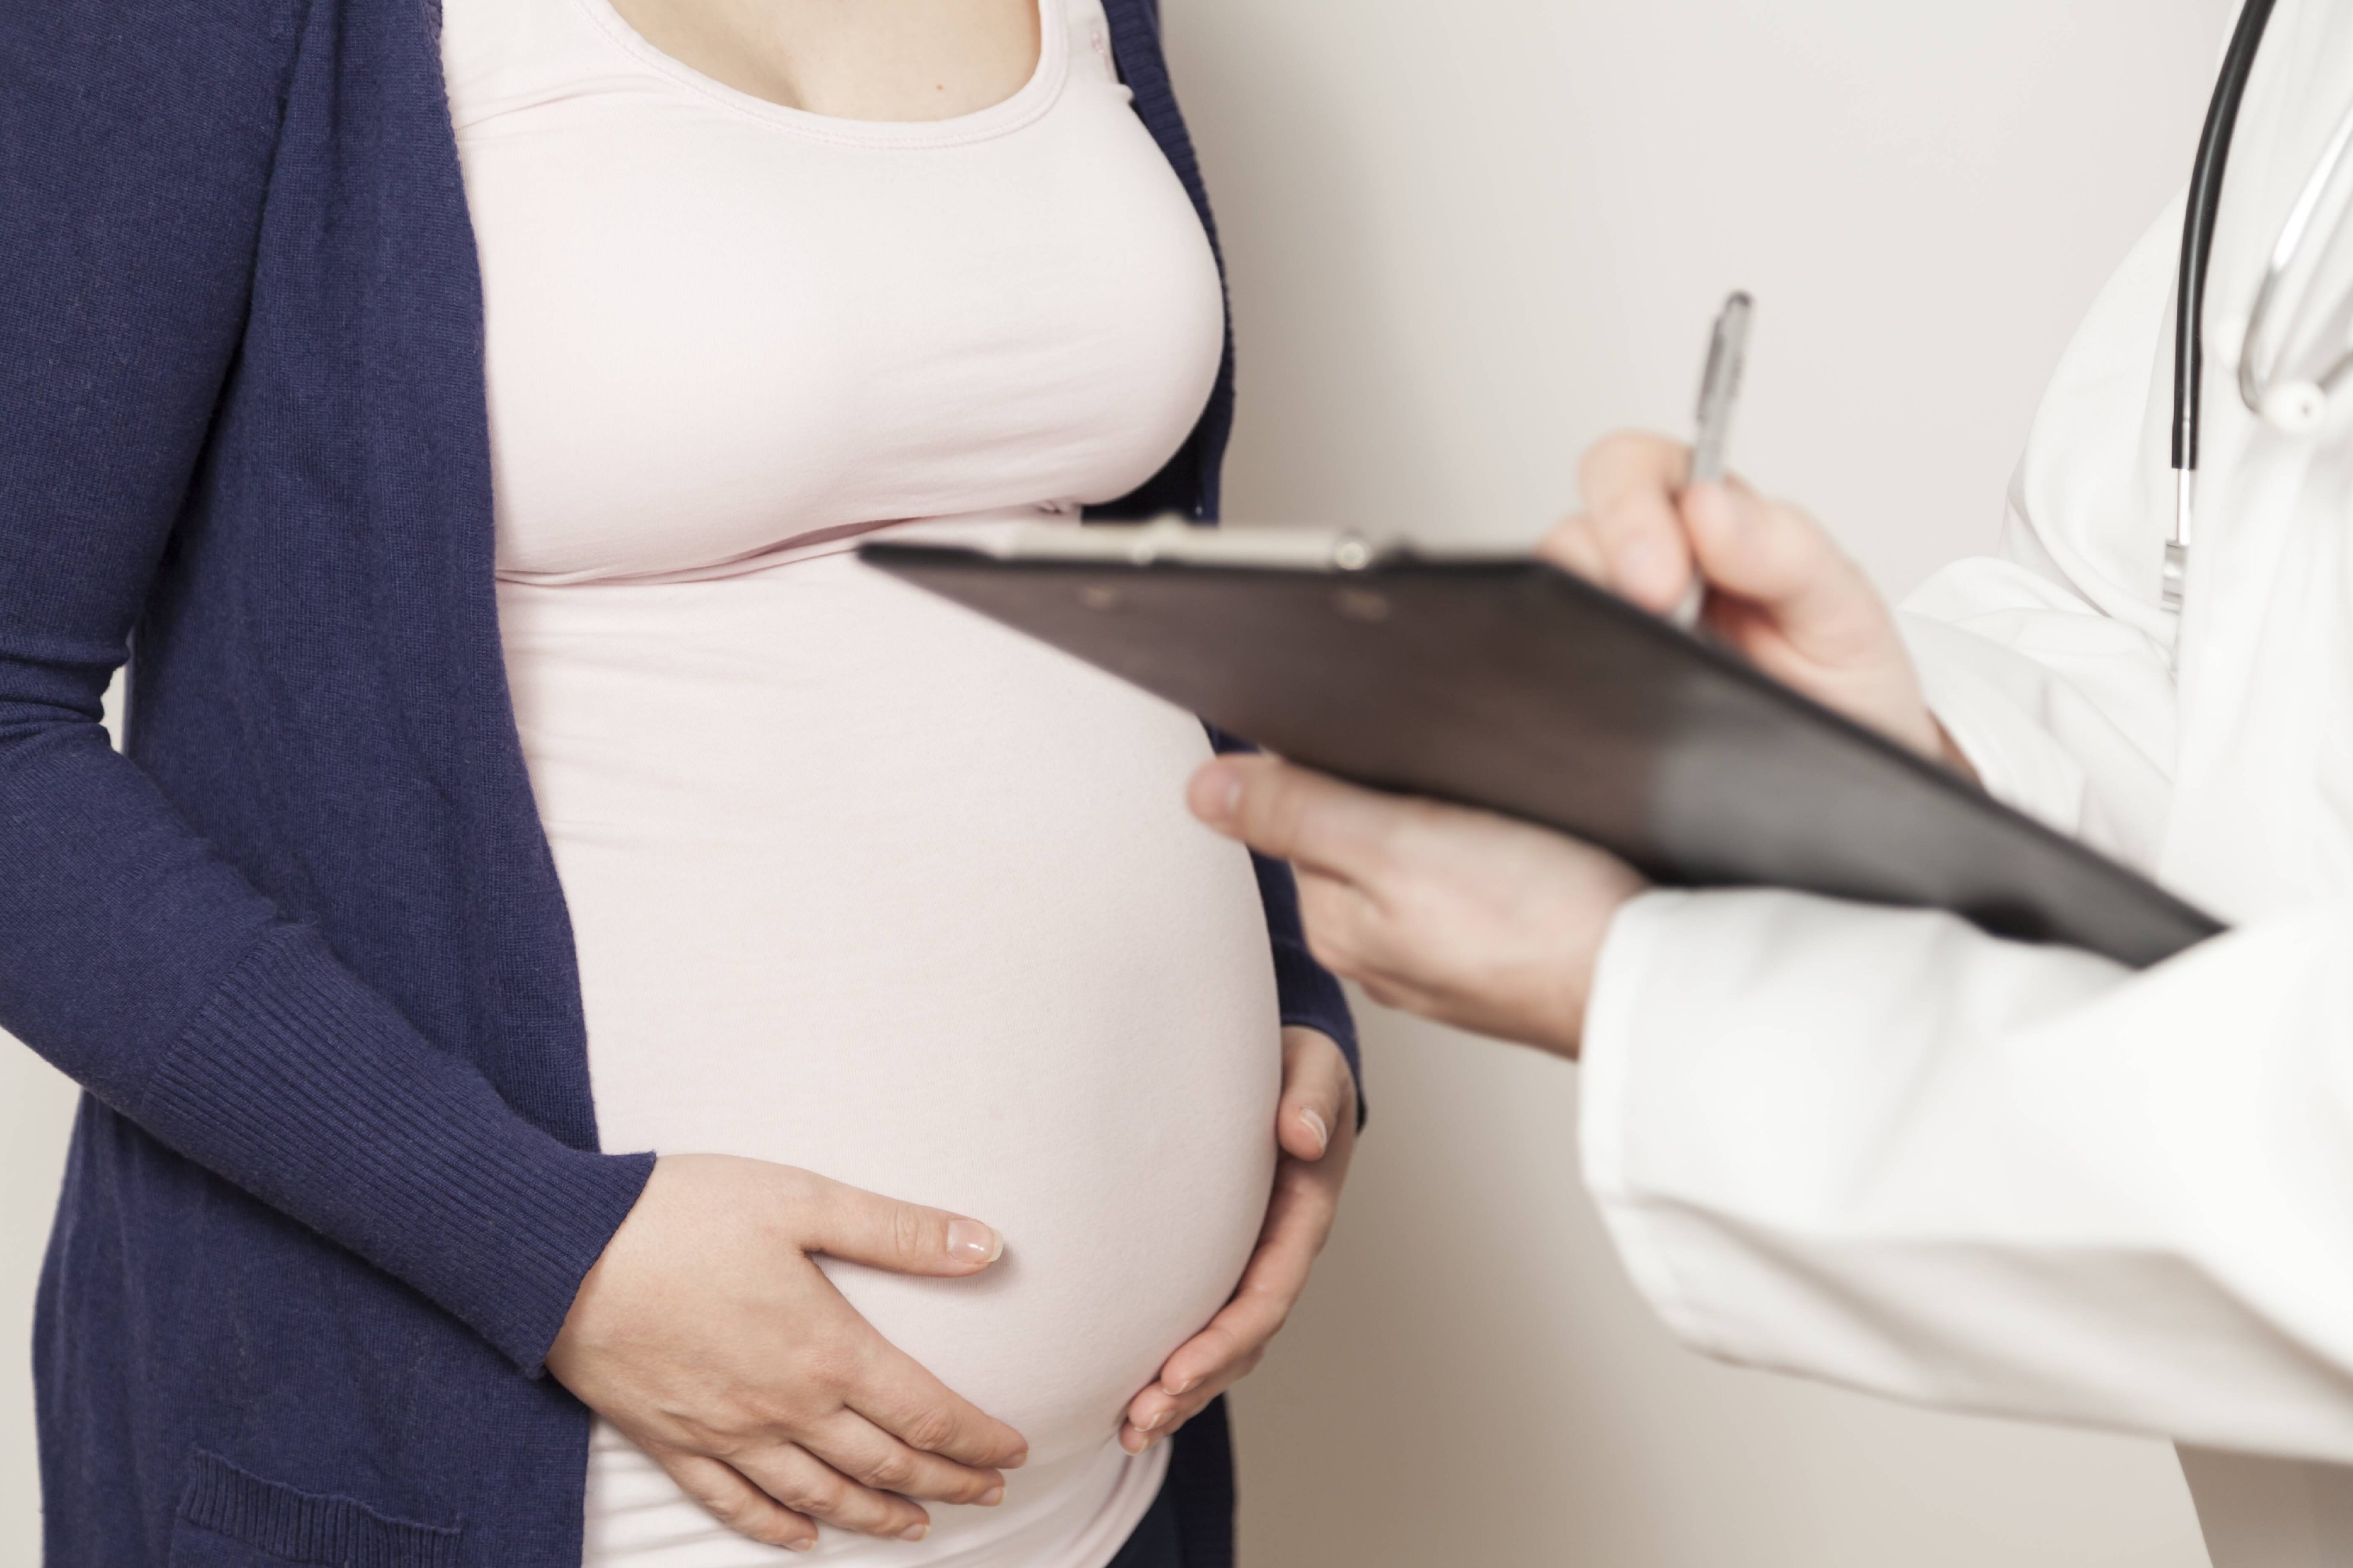 Можно ли заниматься сексом во время беременности и насколько это безопасно?